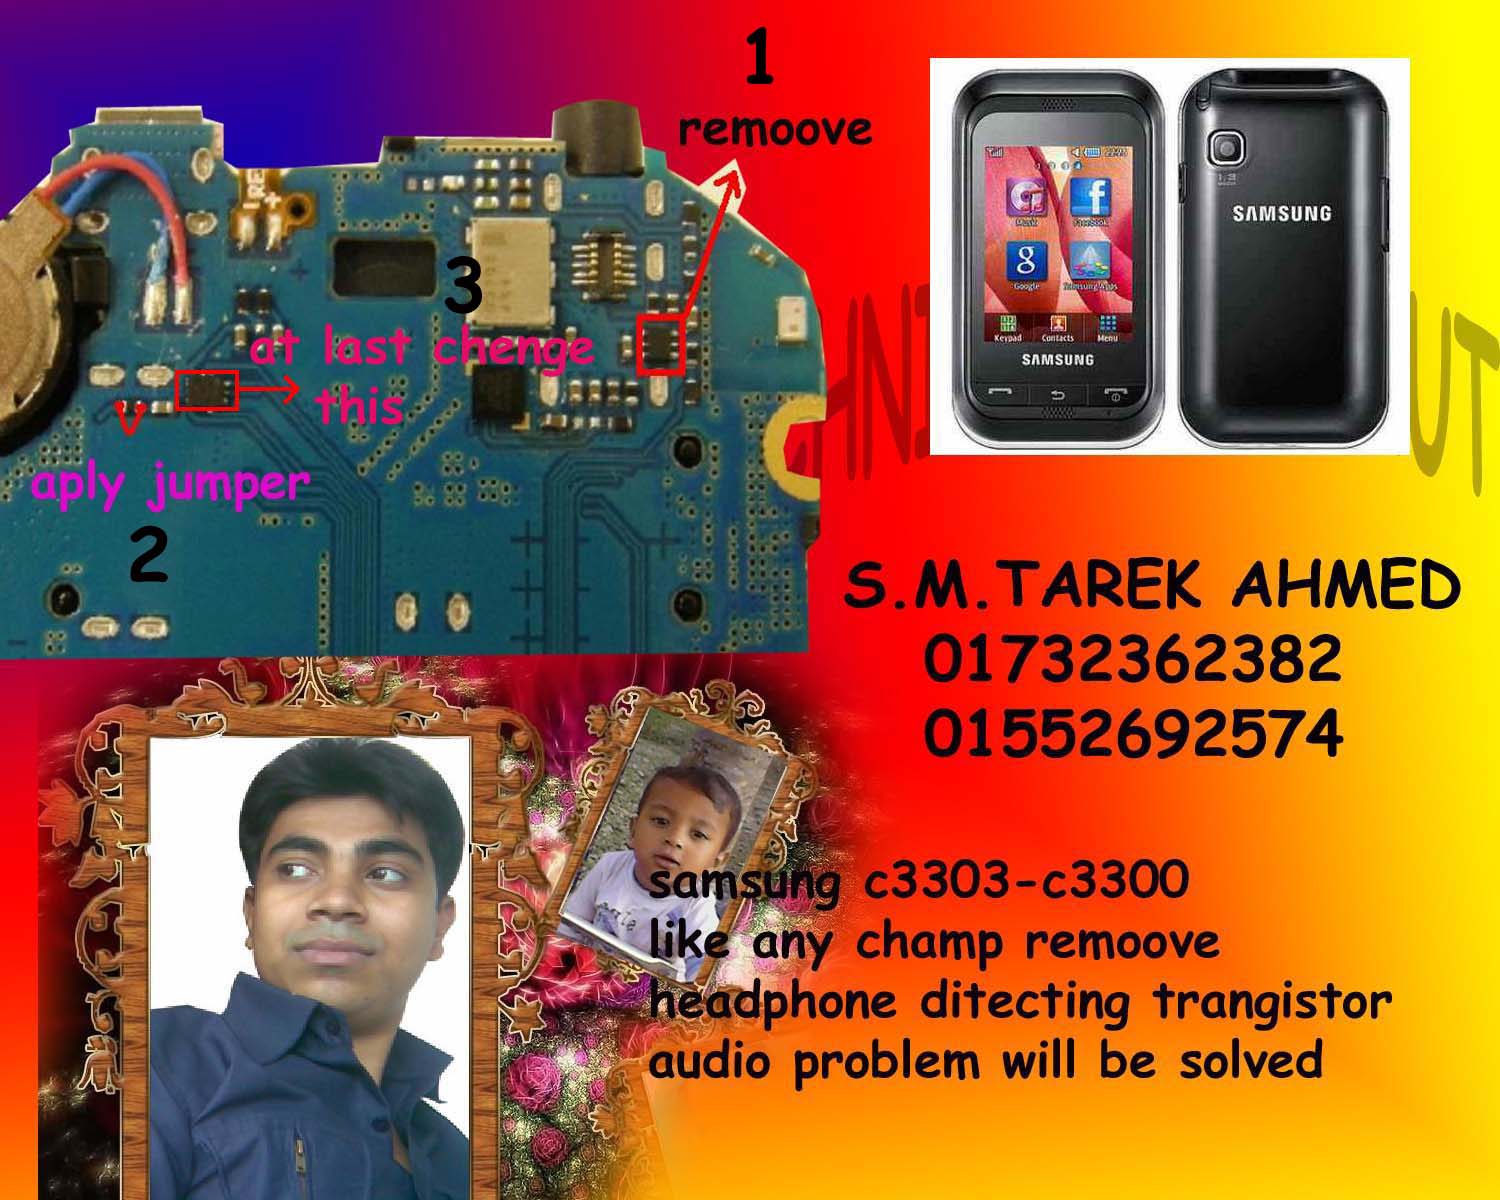 حل مشكلة السماعة ، جرس، مايك، سامسونج C3303 Samsung+champ+audio+solution